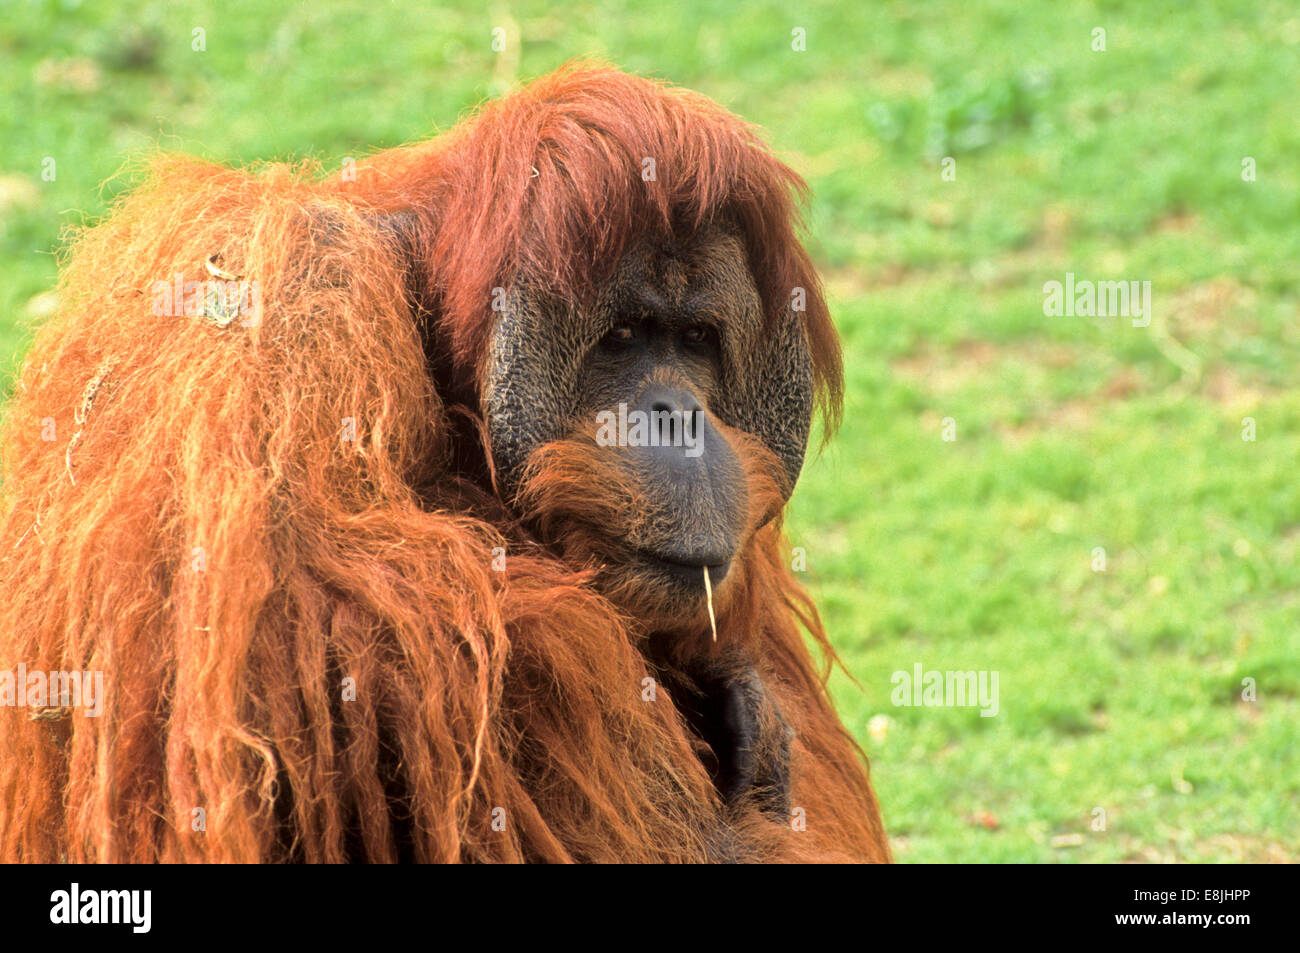 Sumatran orangutan (Pongo abelii or Pongo pygmaeus abelii) In a zoo Stock Photo